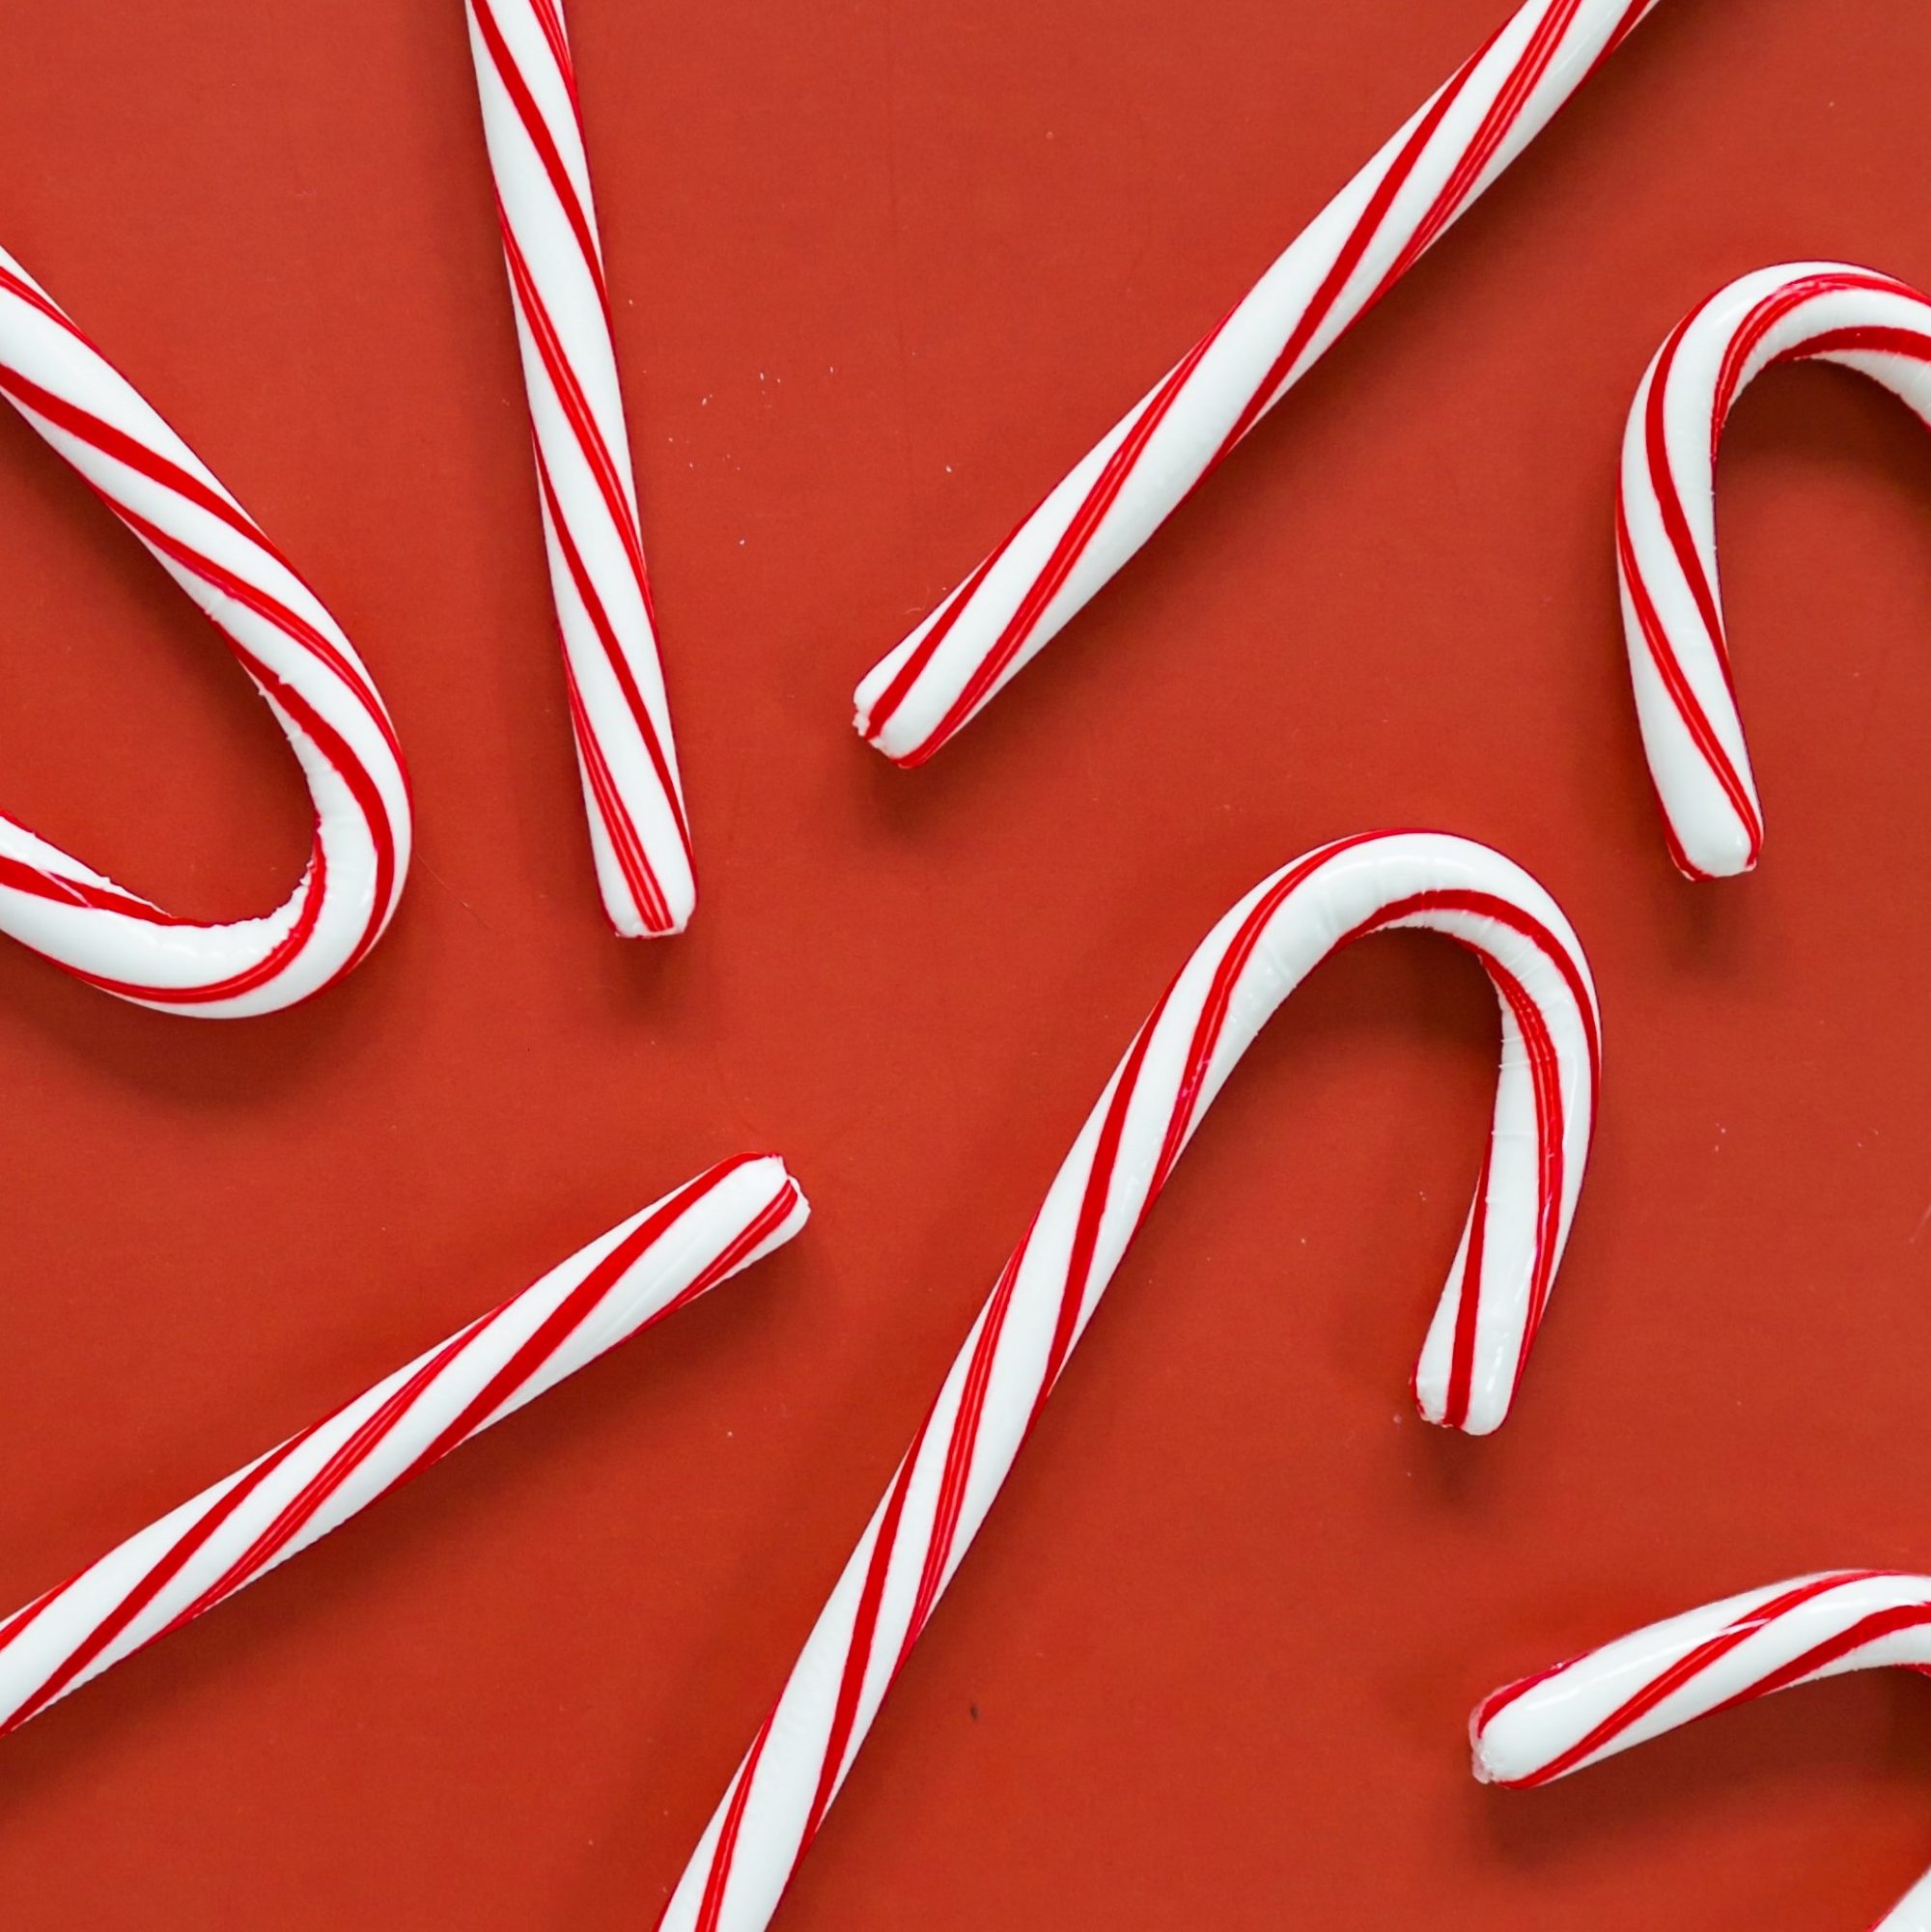 Zuckerstangen auf rotem Hintergrund, in weihnachtlicher Stimmung.